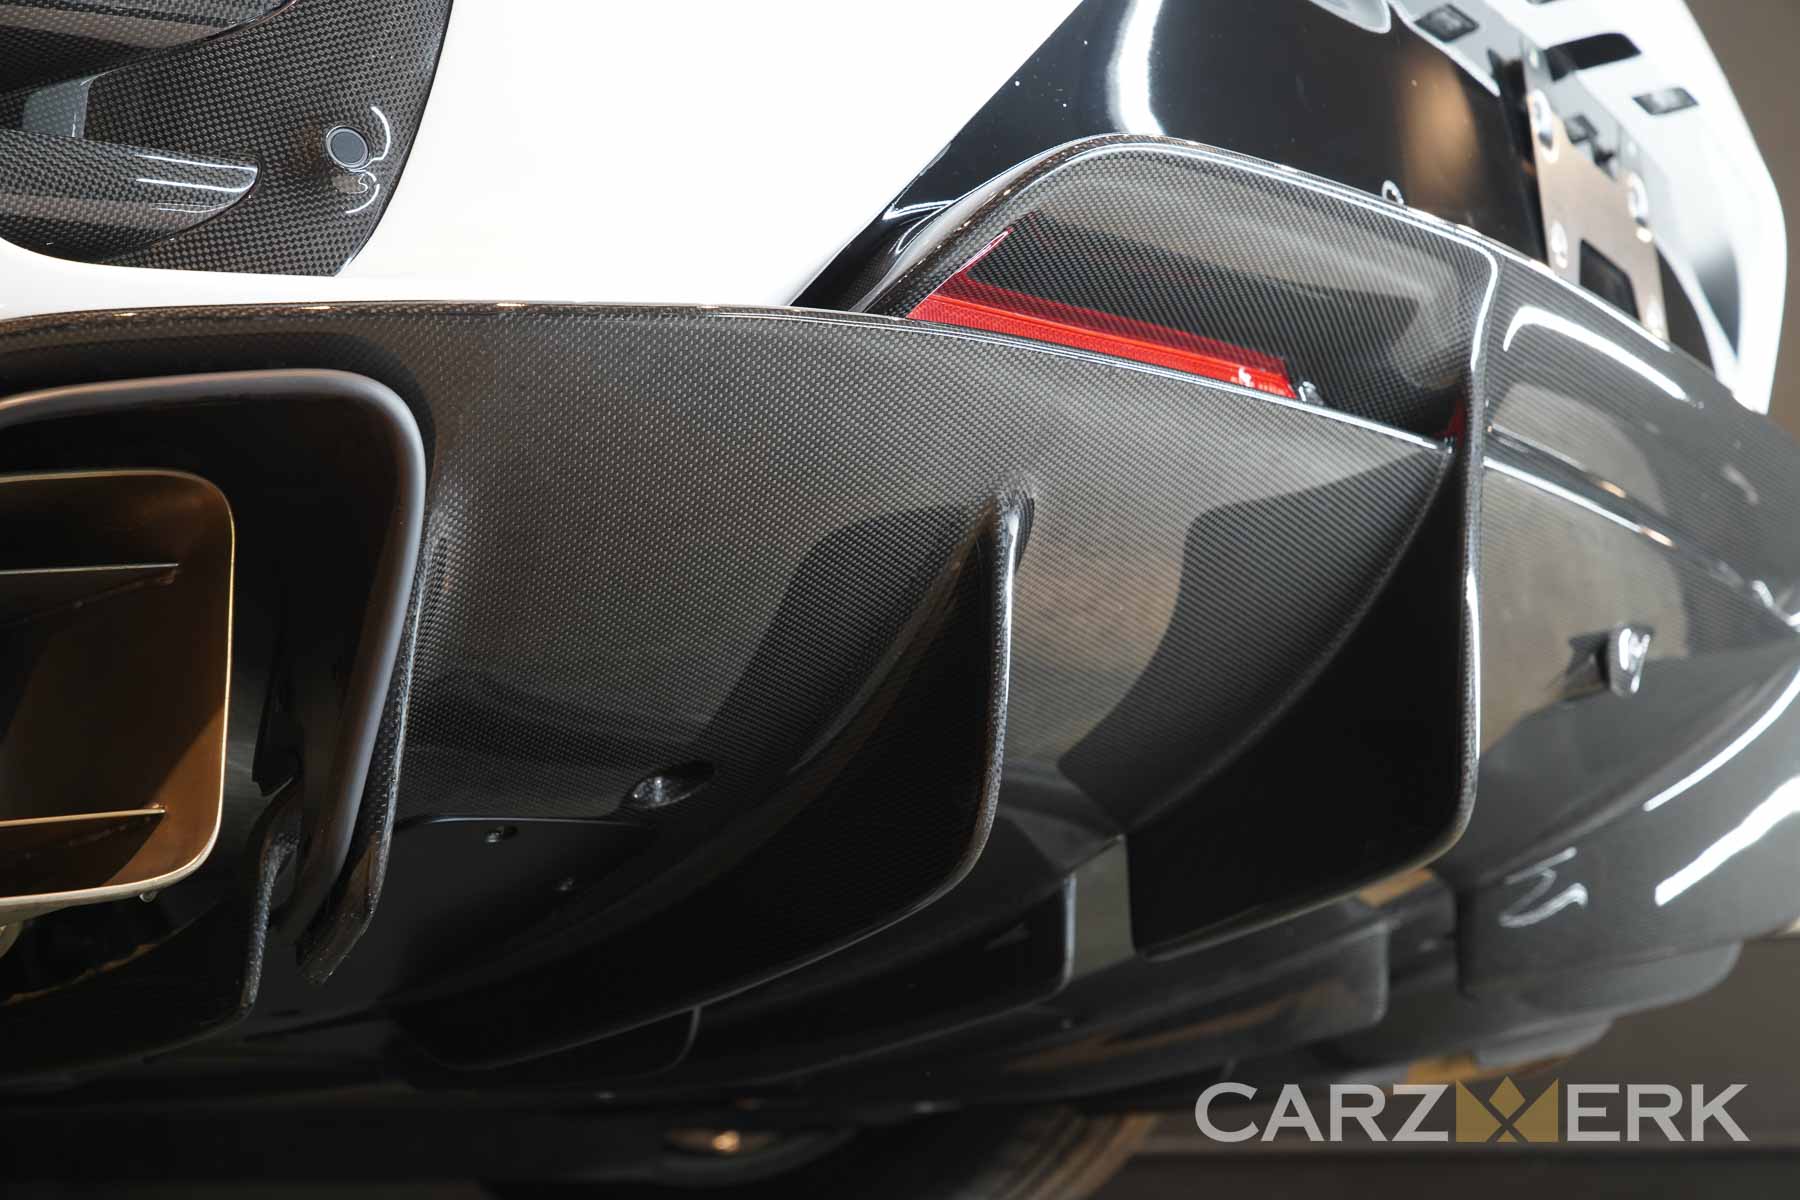 2022 Ferrari 812 Competizione - Bianco Cervino - Carbon fiber rear diffuser